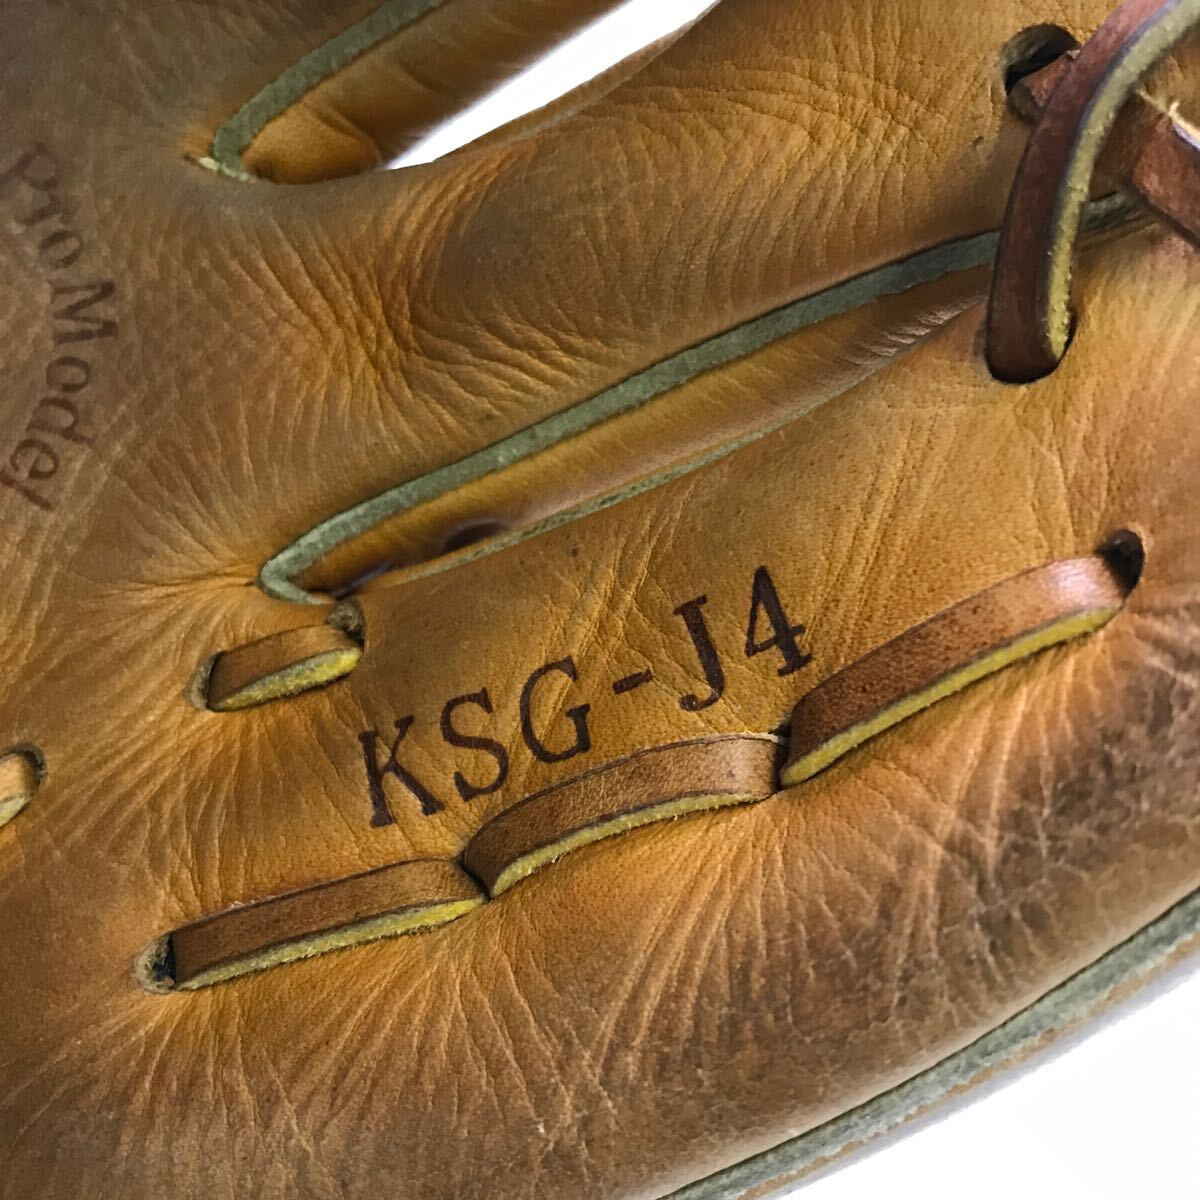 G-1056 久保田スラッガー KUBOTA SLUGGER 少年軟式 オールラウンド用 KSG-J4 グローブ グラブ 野球 中古品 の画像5